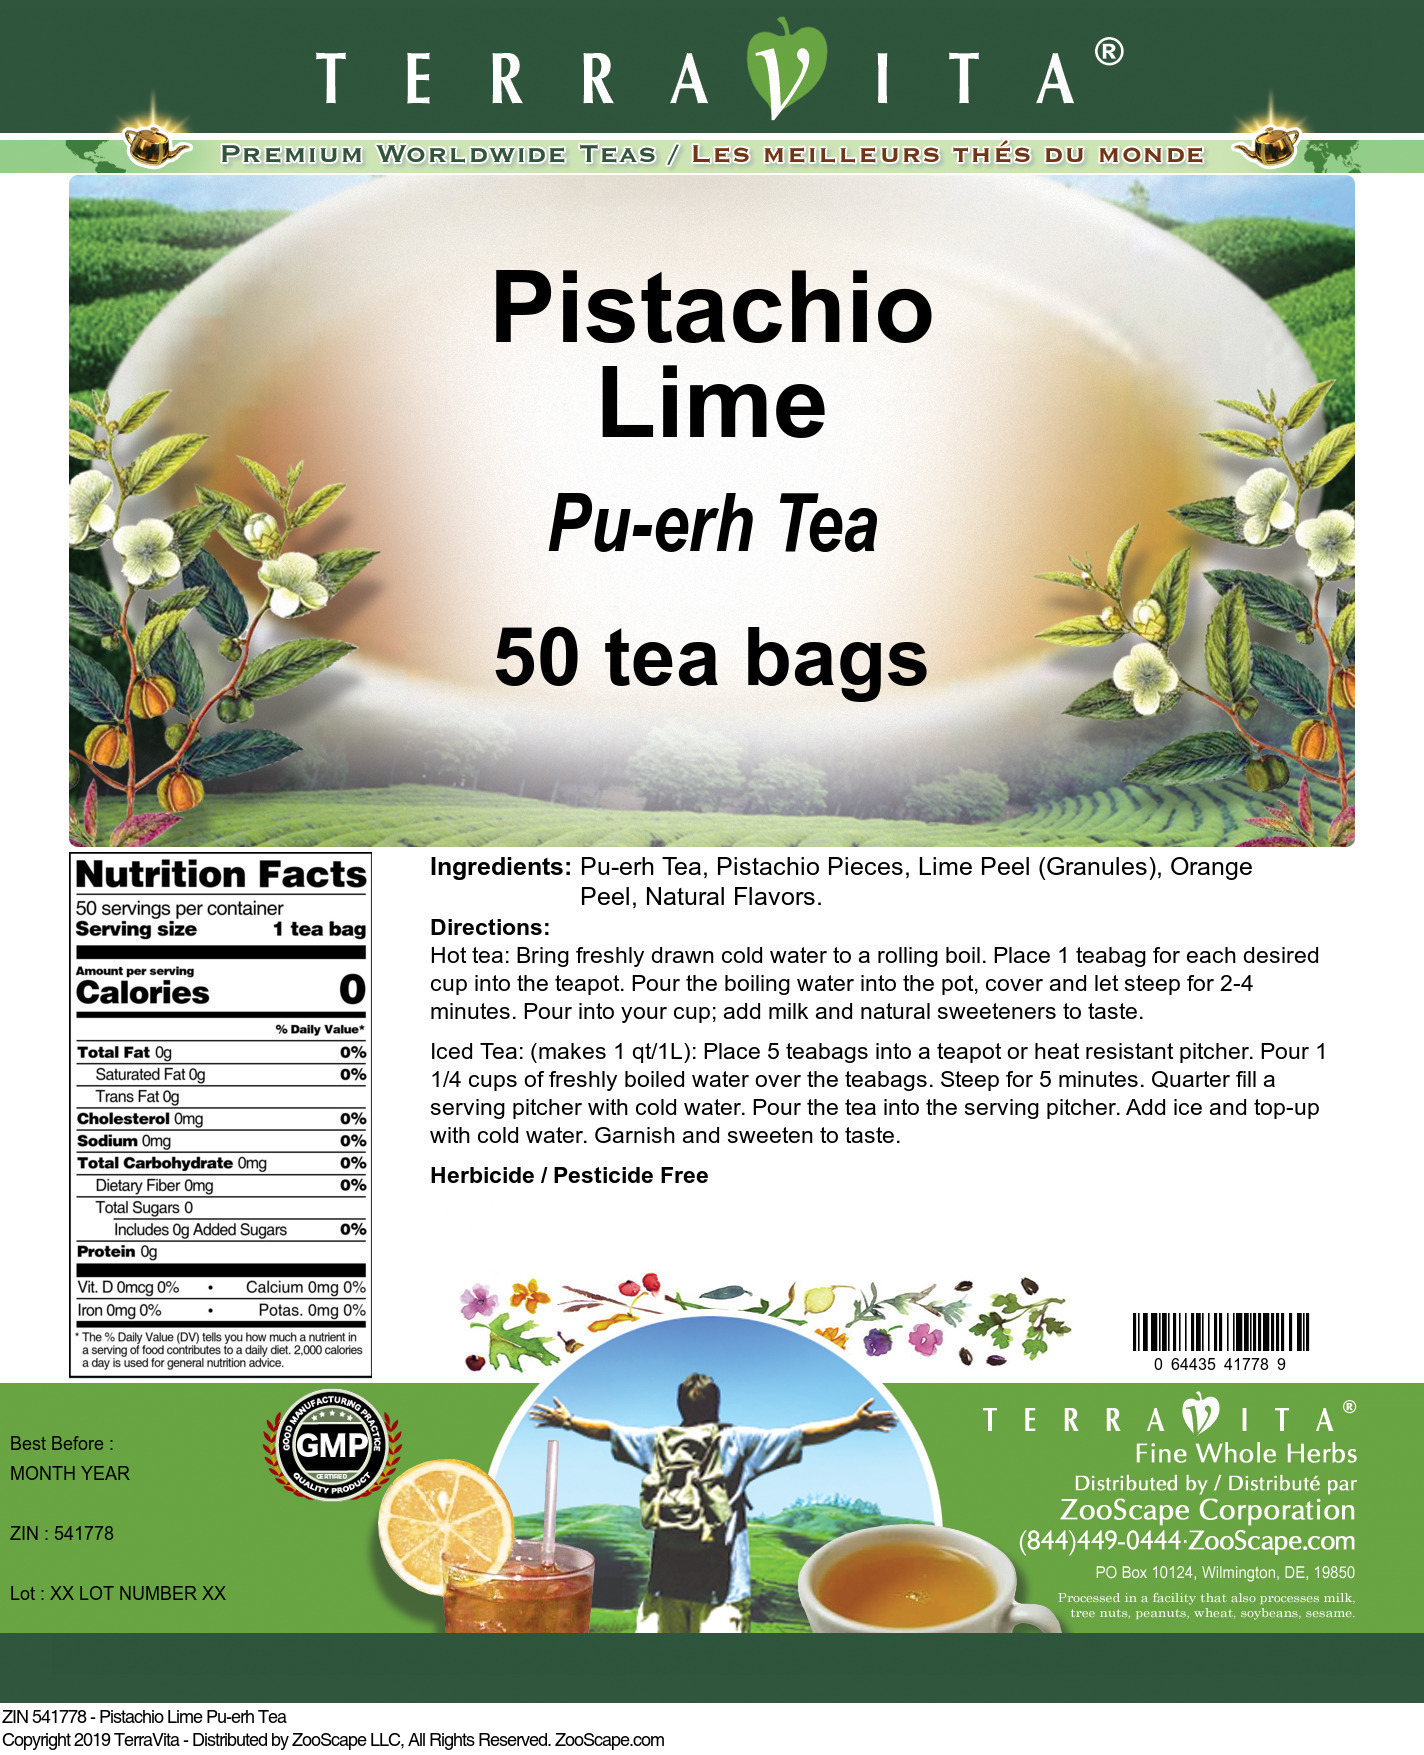 Pistachio Lime Pu-erh Tea - Label